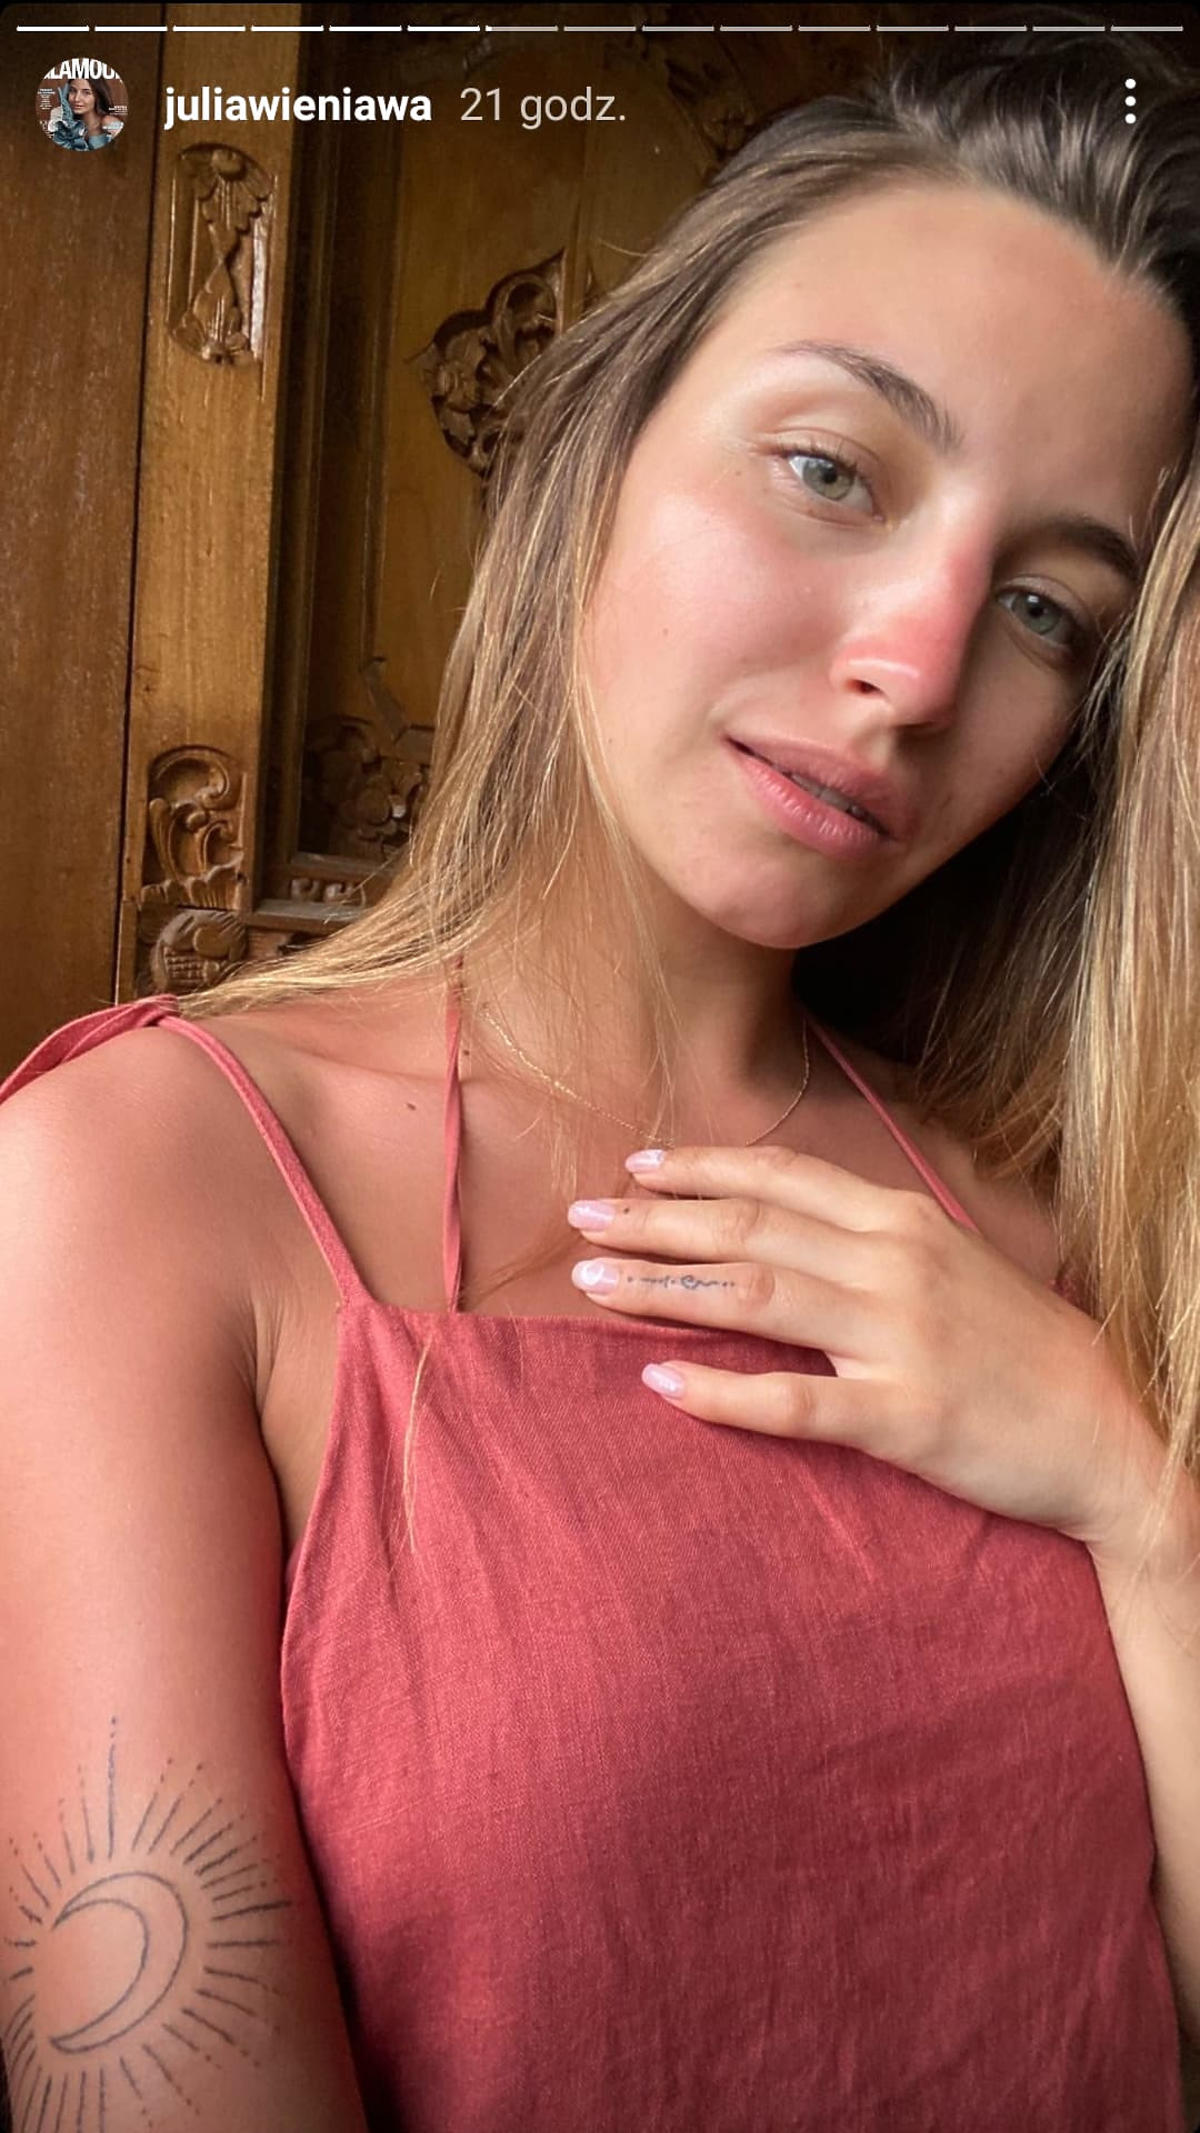 Julia Wieniawa zafundowała sobie nowe tatuaże na wakacjach na Bali